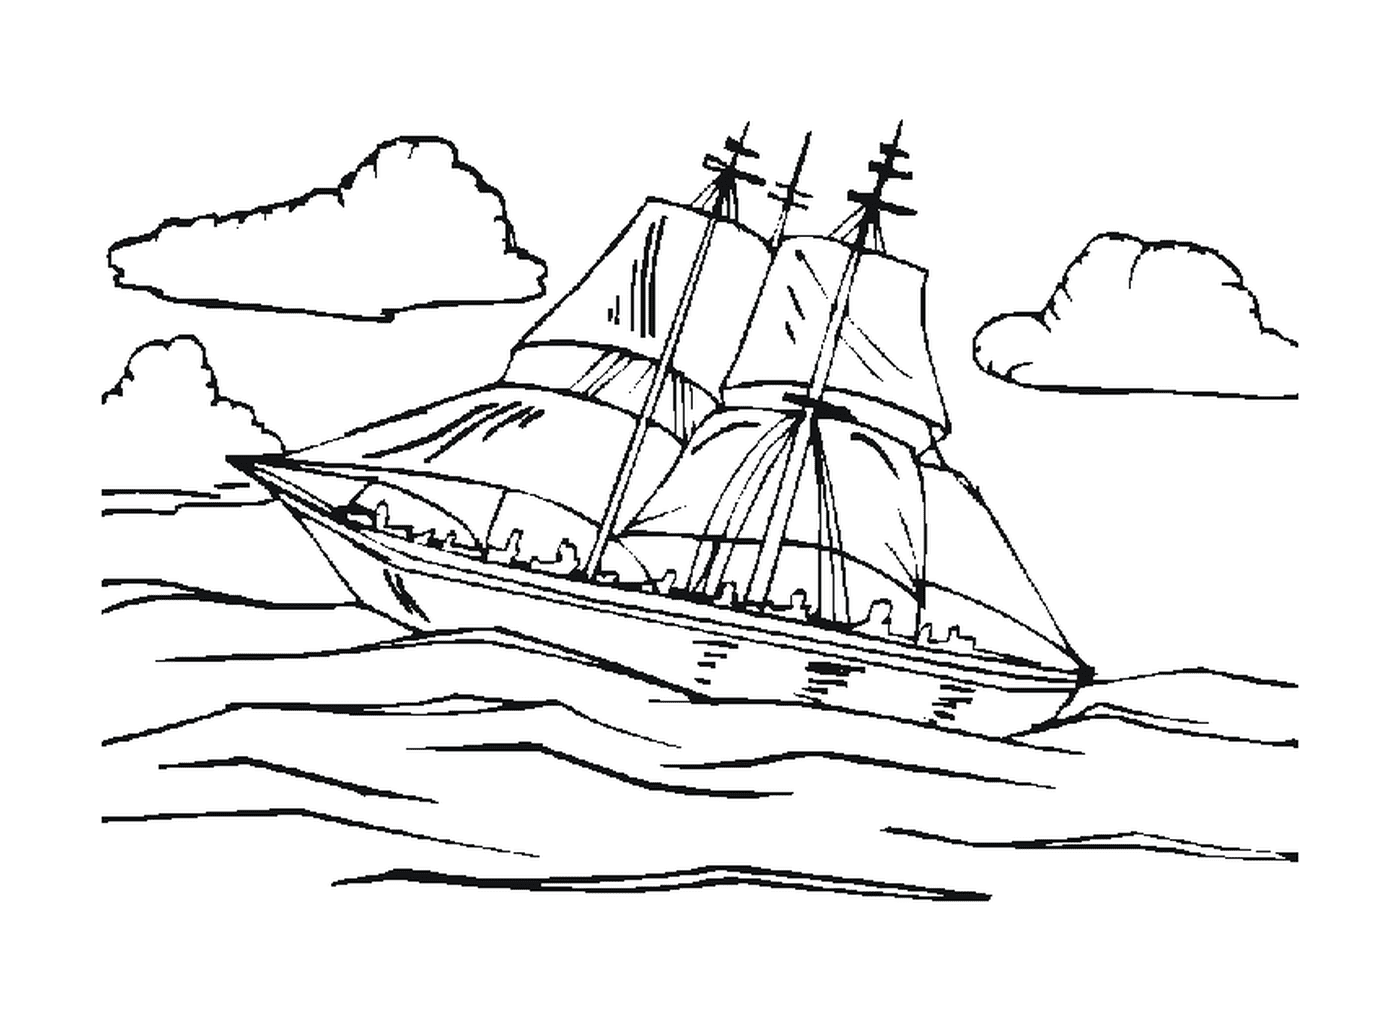  Una barca a vela in mare 